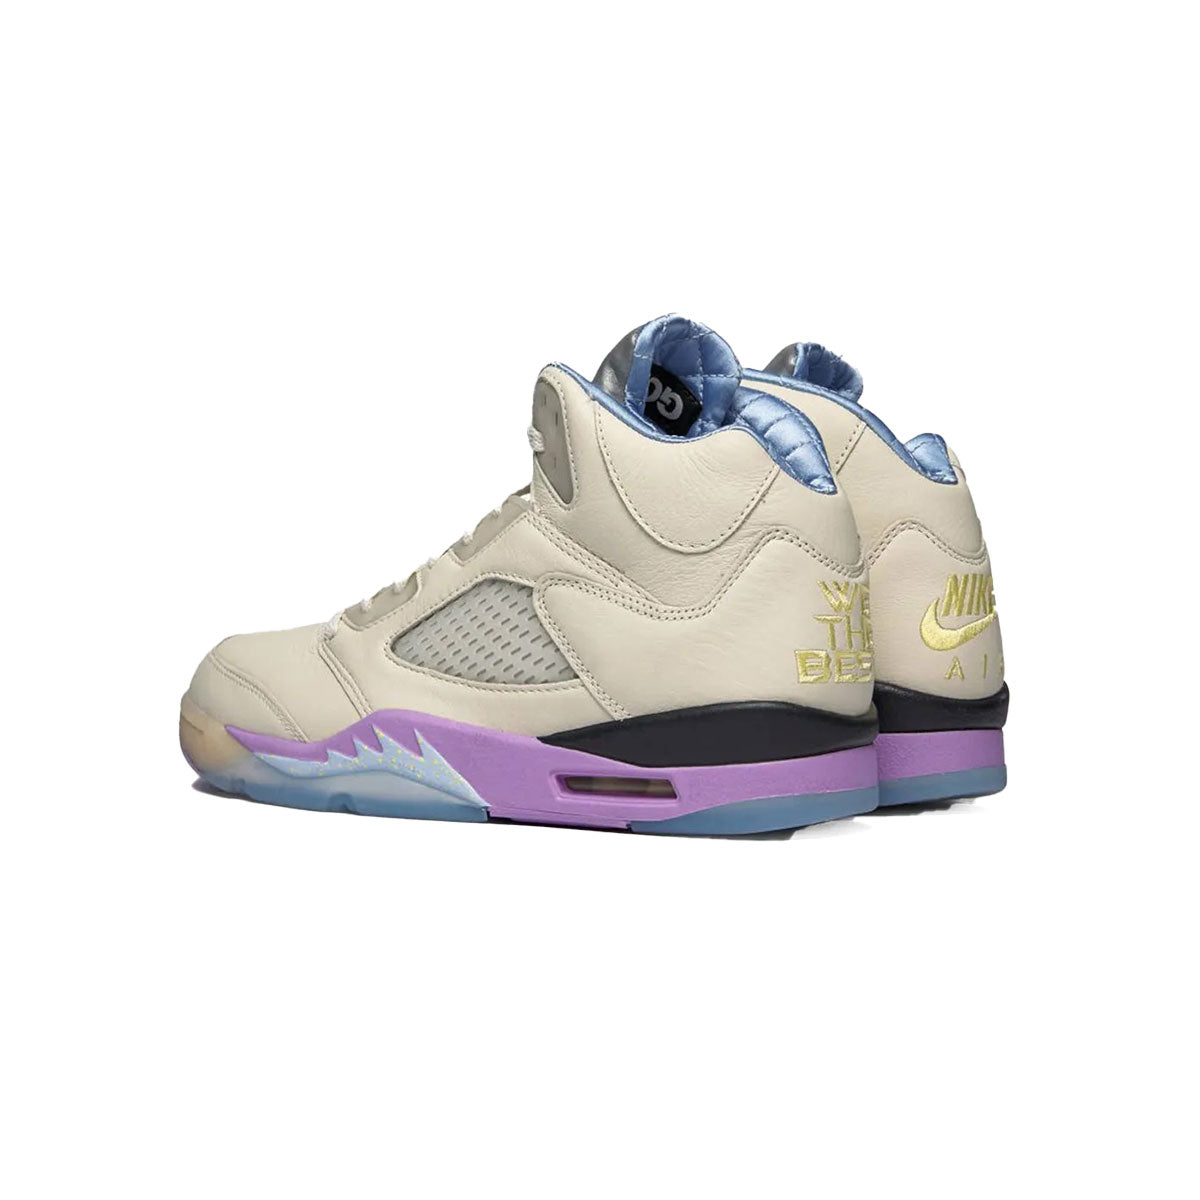 DJ Khaled × Nike Air Jordan 5 Retro SP Sail DJ キャレド × ナイキ